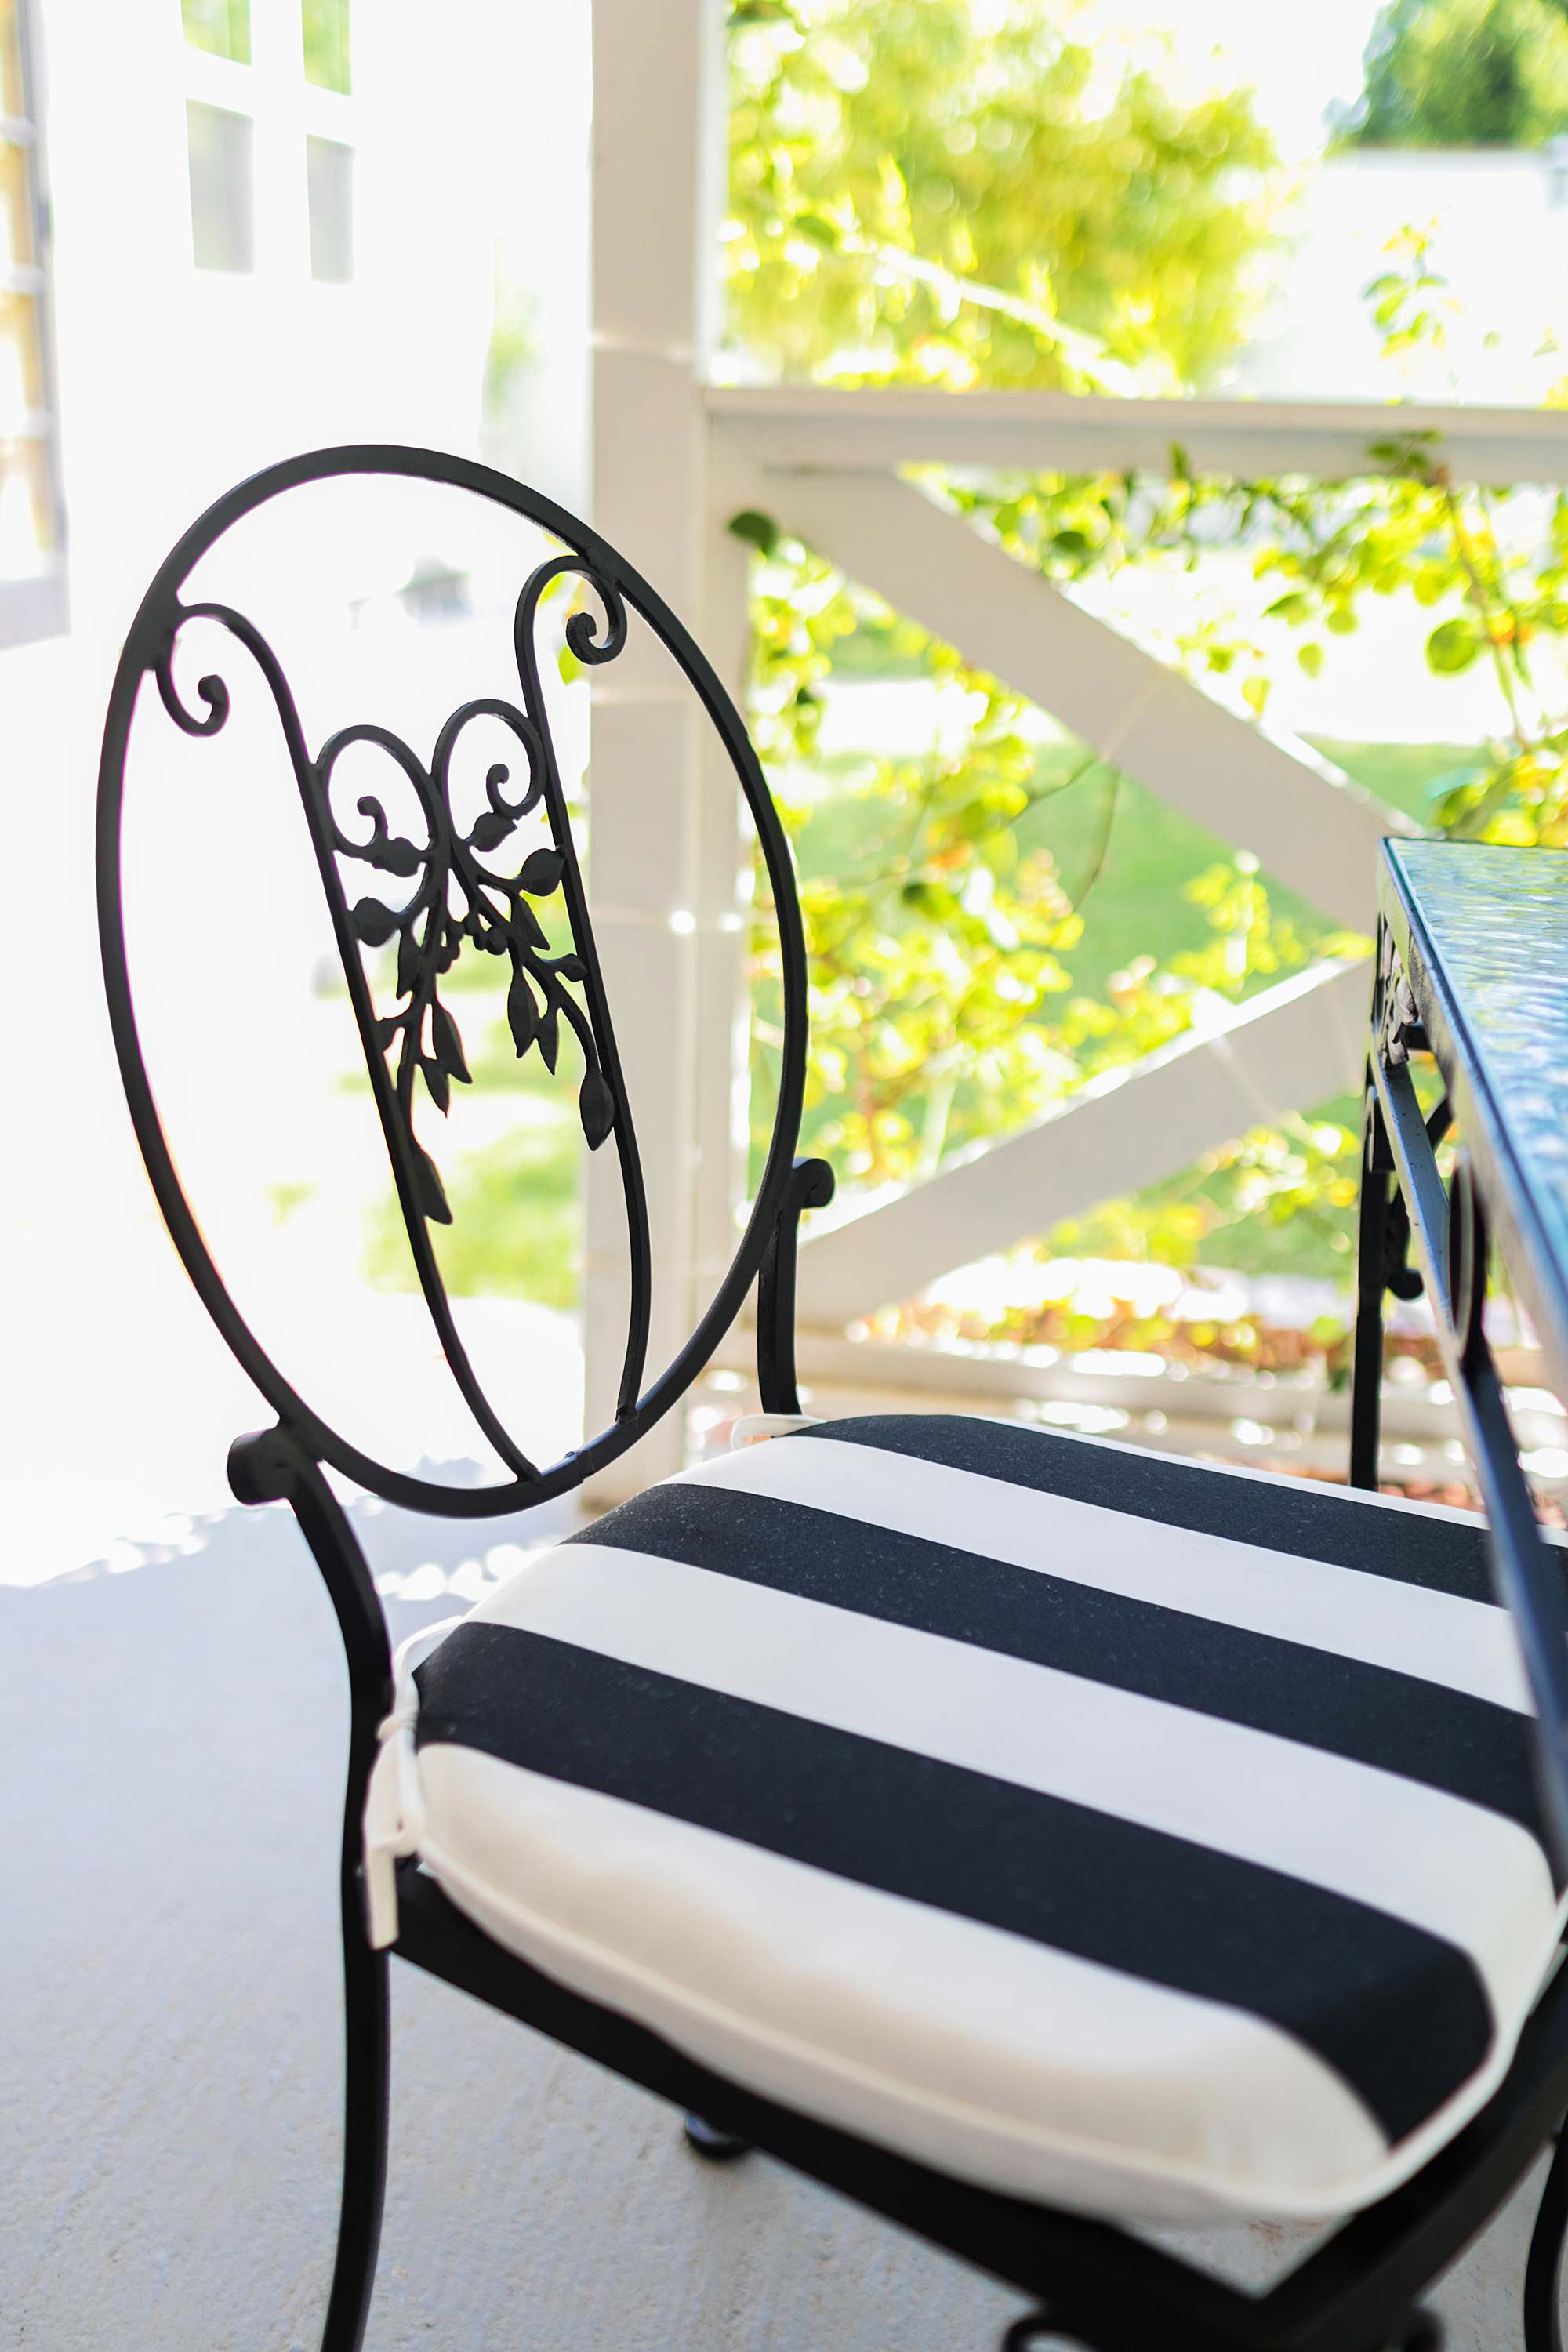 black and white stripe cushion outdoor amazon on black iron patio furniture found at estate sale phoenix arizona paradise valley